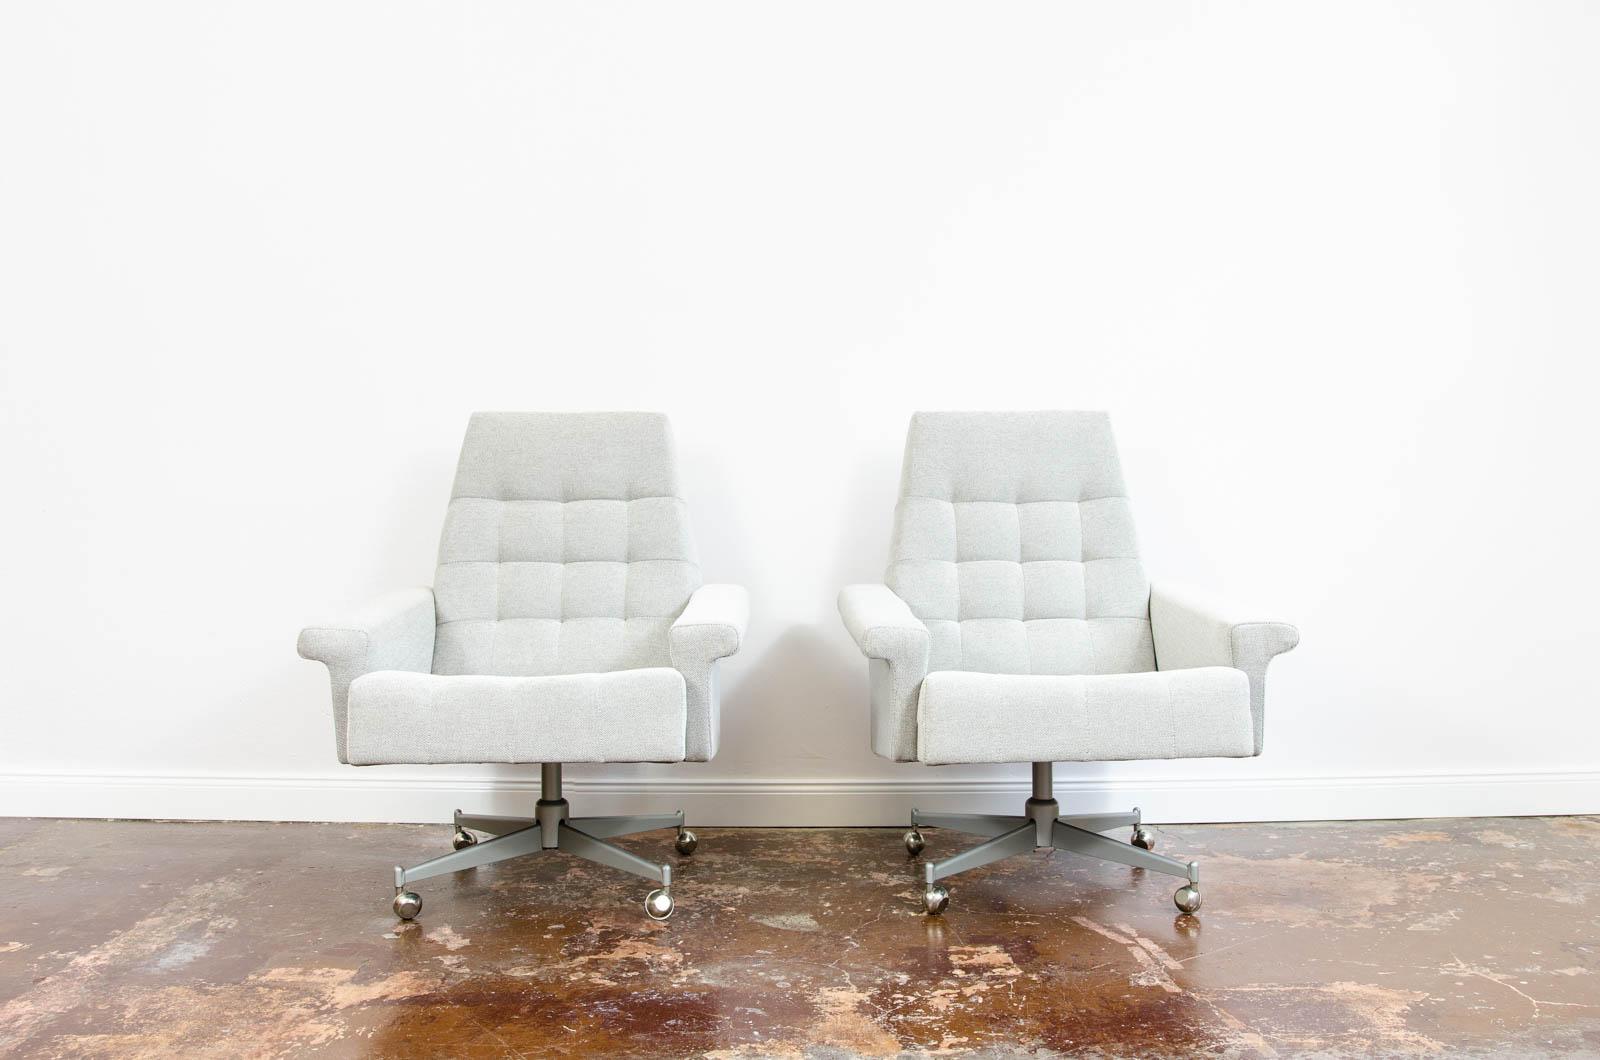 Paar Vintage-Sessel von UP Závody auf Metallrädern, Tschechoslowakei, 1970

Vollständig neu gepolsterte Stühle in weiß-grauem, wasserfestem Stoff. Sitz und Rückenlehne mit Steppung.
Die Stühle stehen auf einem Sternfuß aus Metall auf Rädern.